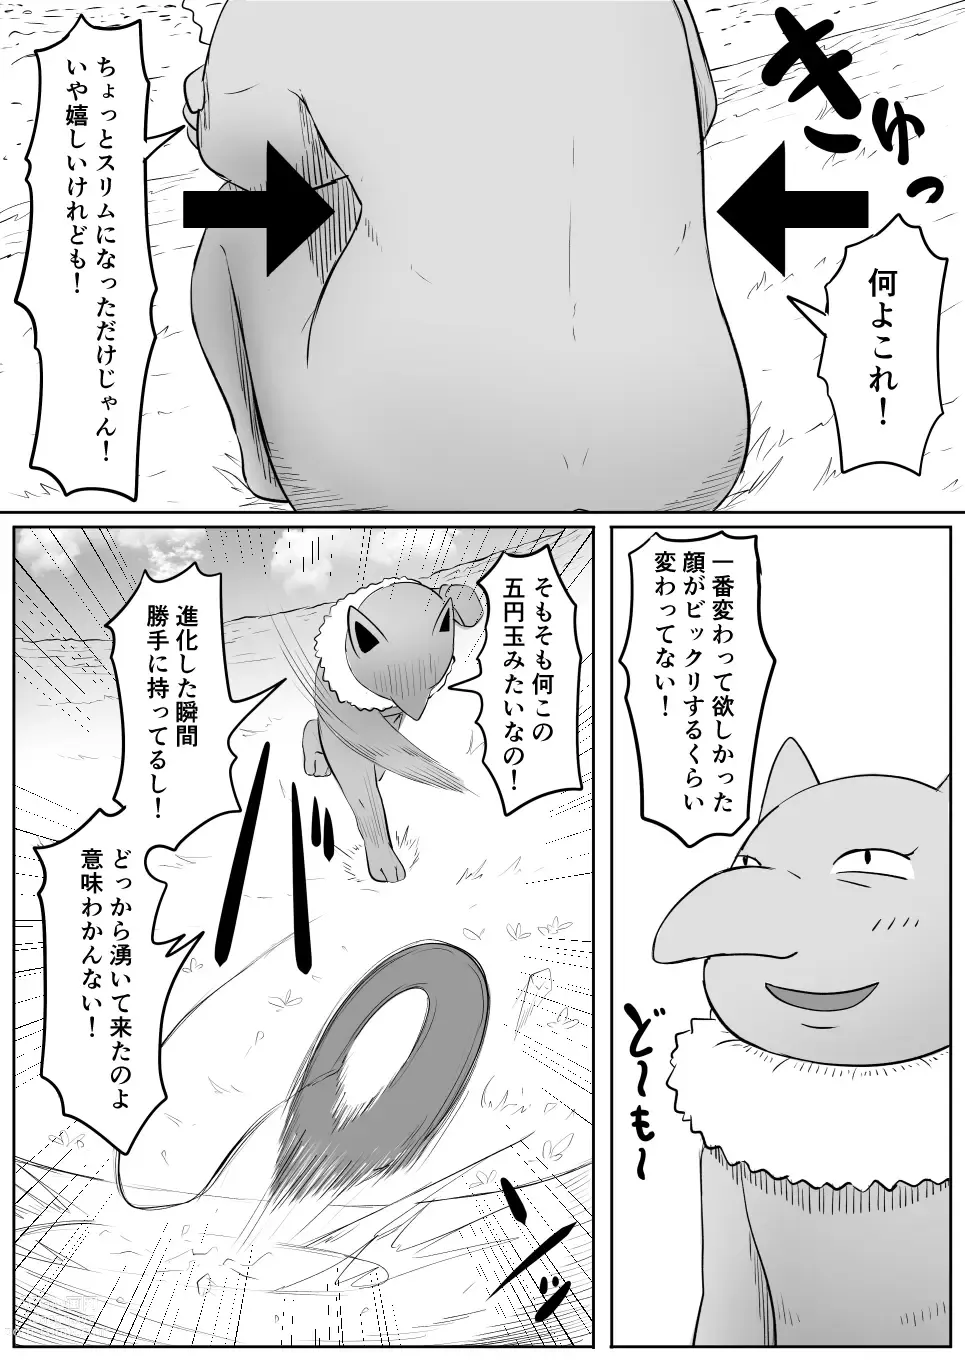 Page 10 of doujinshi Koi o Shita Sleeper-chan.